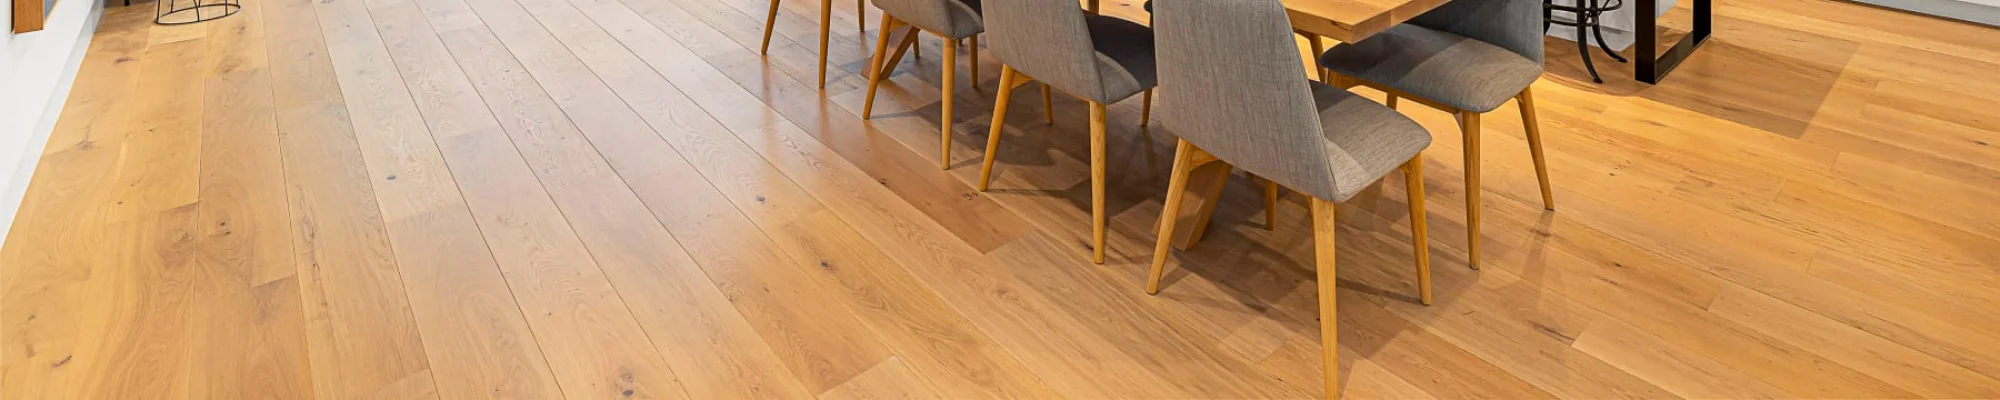 Hardwood flooring installed in modern kitchen